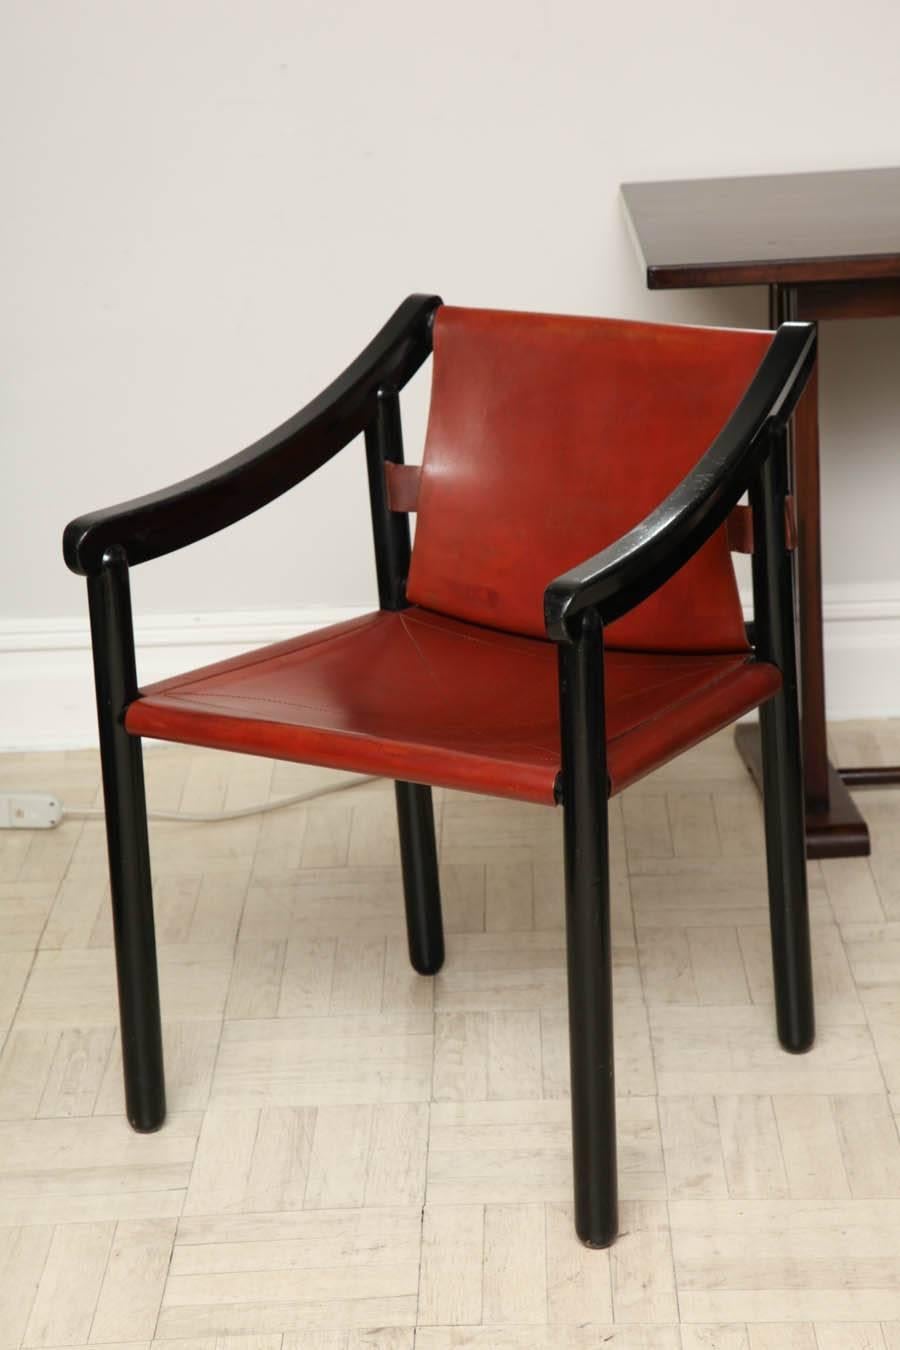 Paire de fauteuils en bois ébonisé et cuir du début du 20e siècle, bras inclinés vers le bas et pieds droits, italiens, vers 1930.